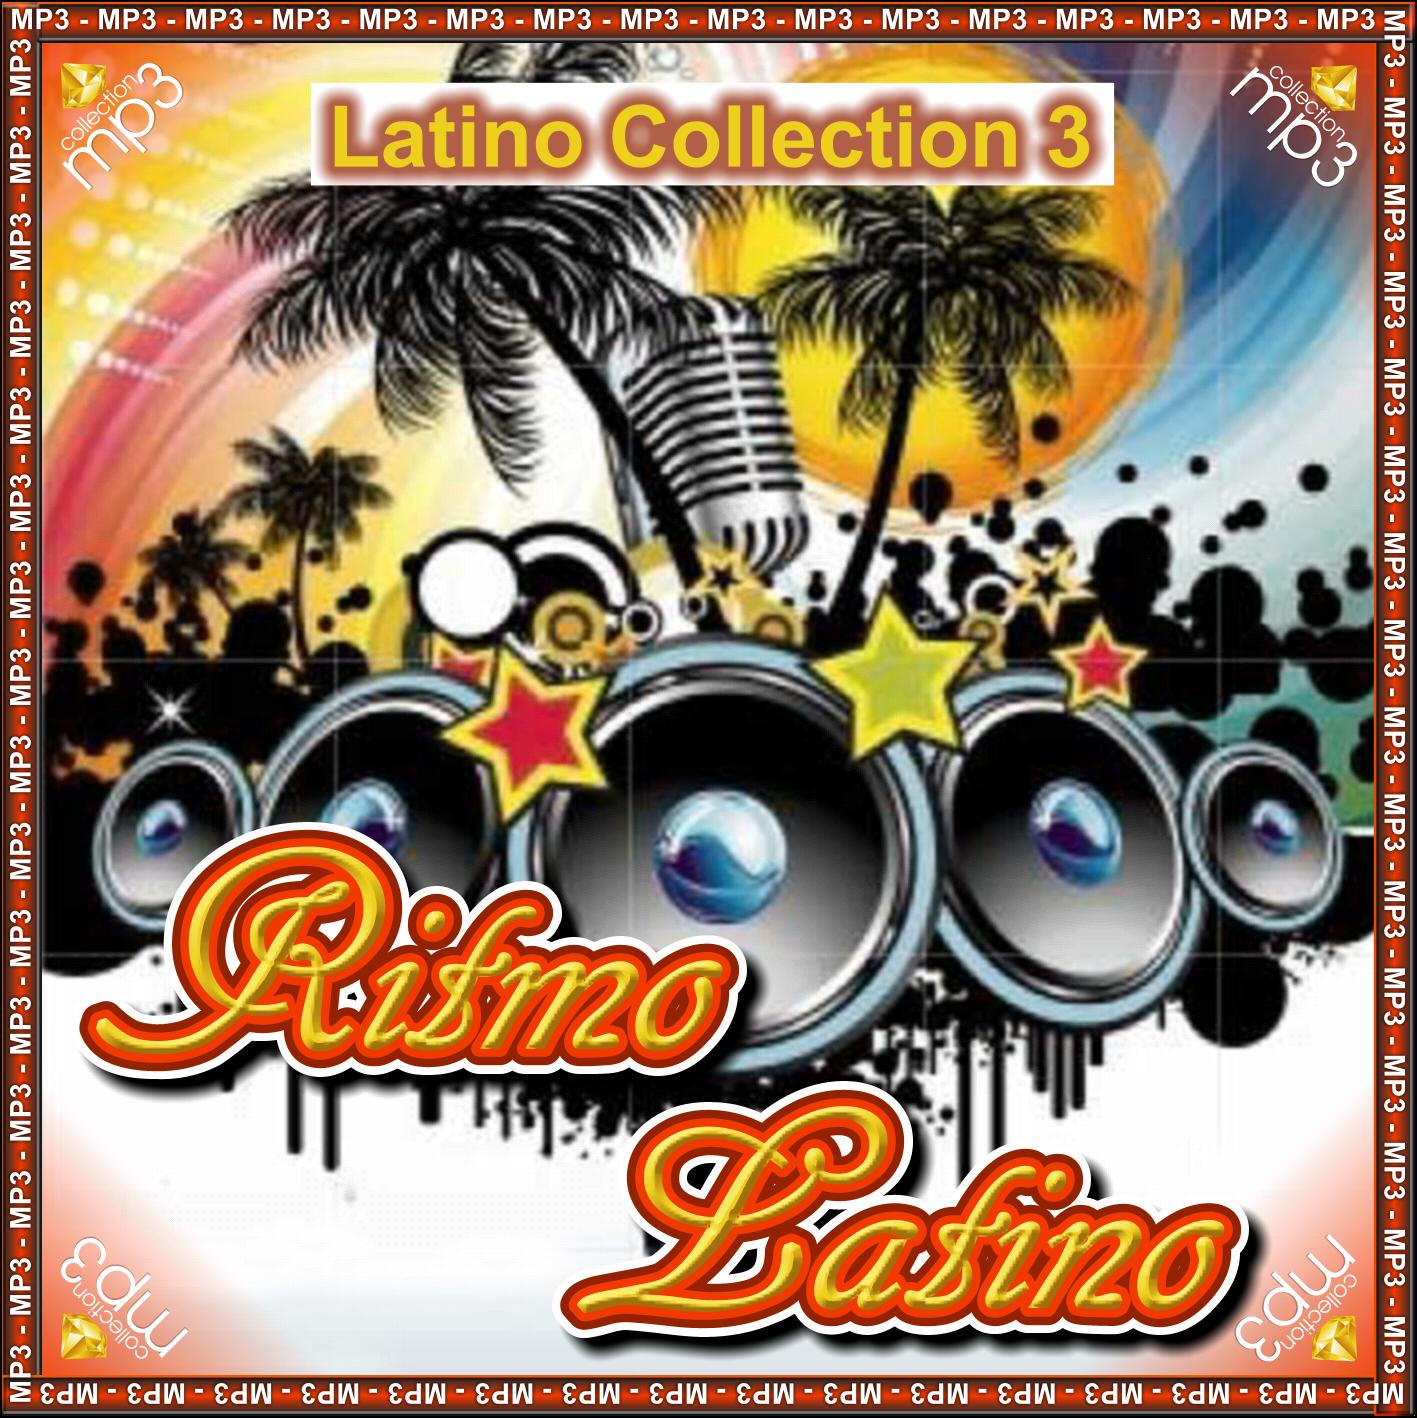 http://2.bp.blogspot.com/--qw2MGggFUg/Te1BhinmNxI/AAAAAAAAAwQ/trIfVVIfsC4/s1600/Ritmo_Latino_Collection_Col_3_1.jpg